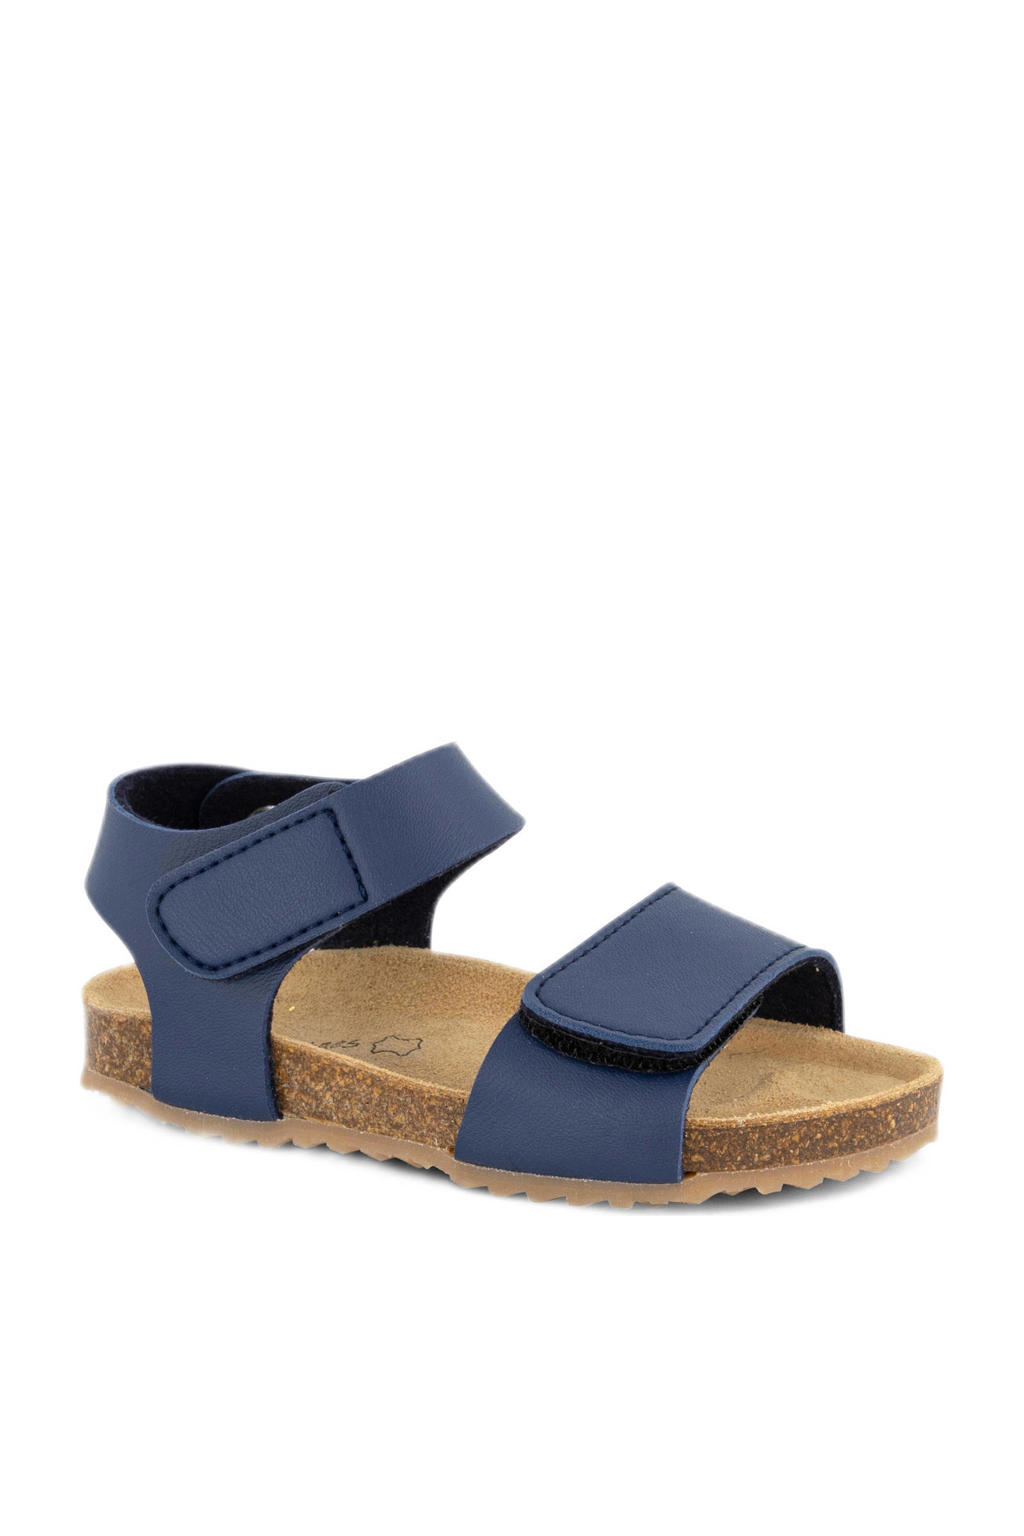 Blauwe jongens Bobbi-Shoes sandalen van imitatieleer met klittenband